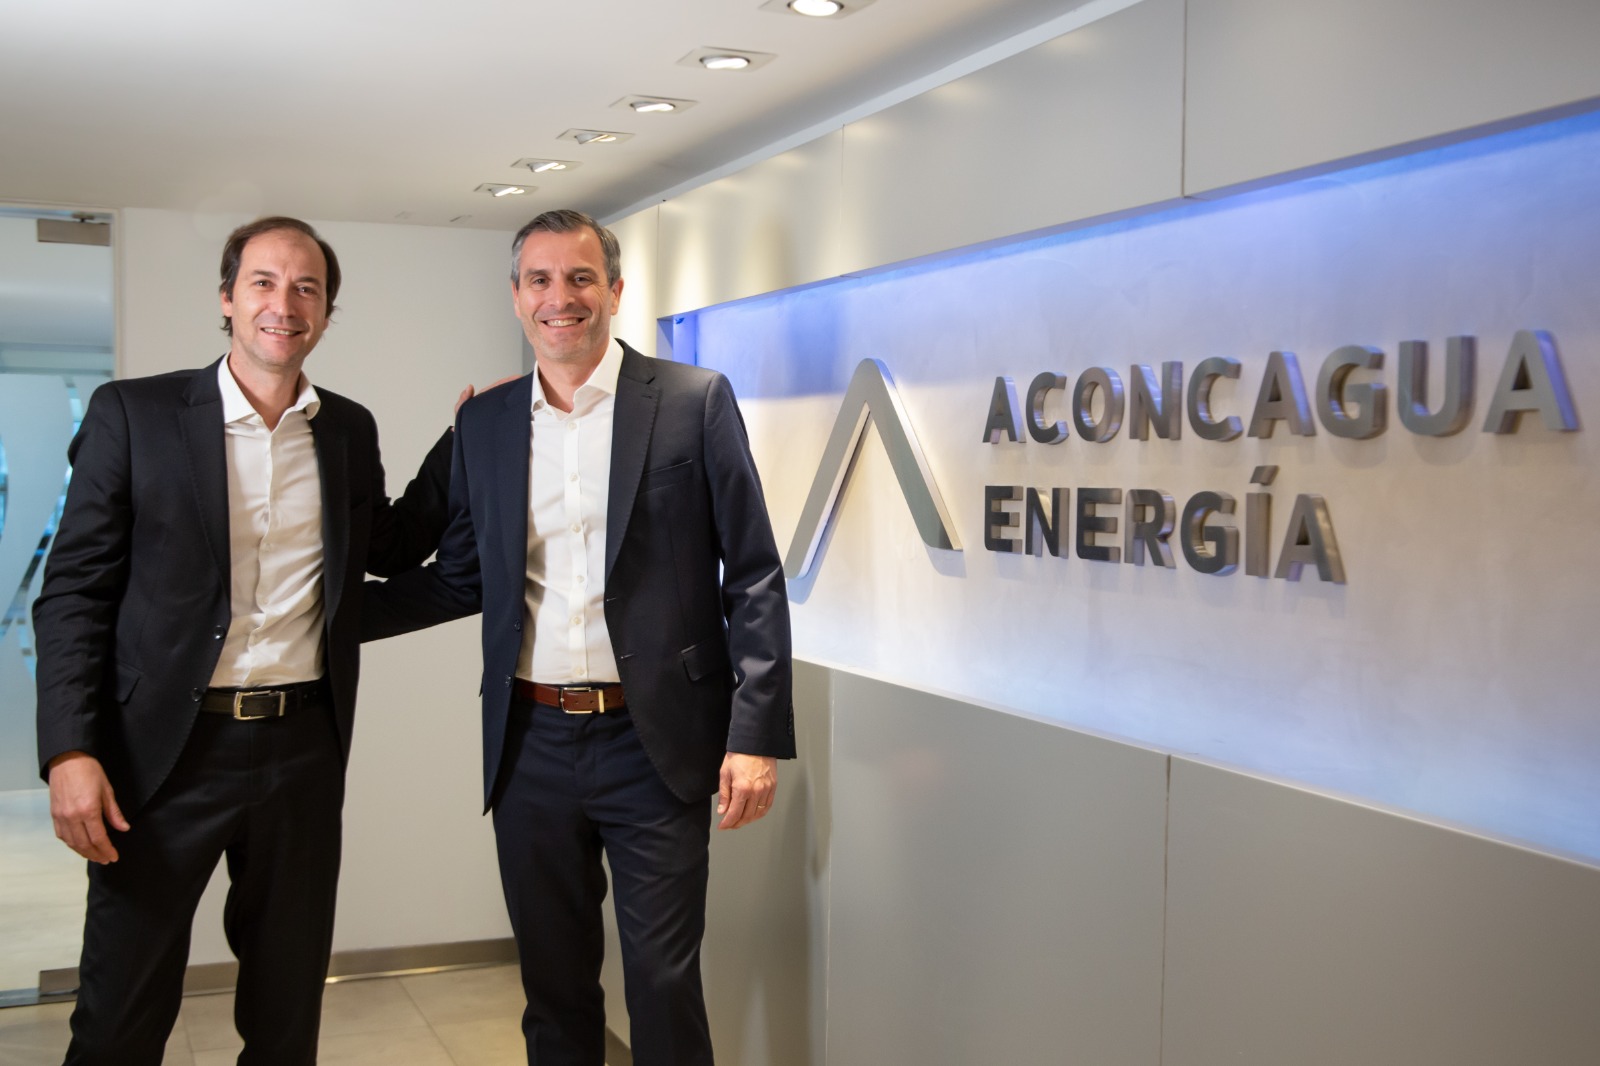 La operadora Aconcagua Energía recibió el visto bueno para emitir hasta 500 millones de dólares en Obligaciones Negociables.